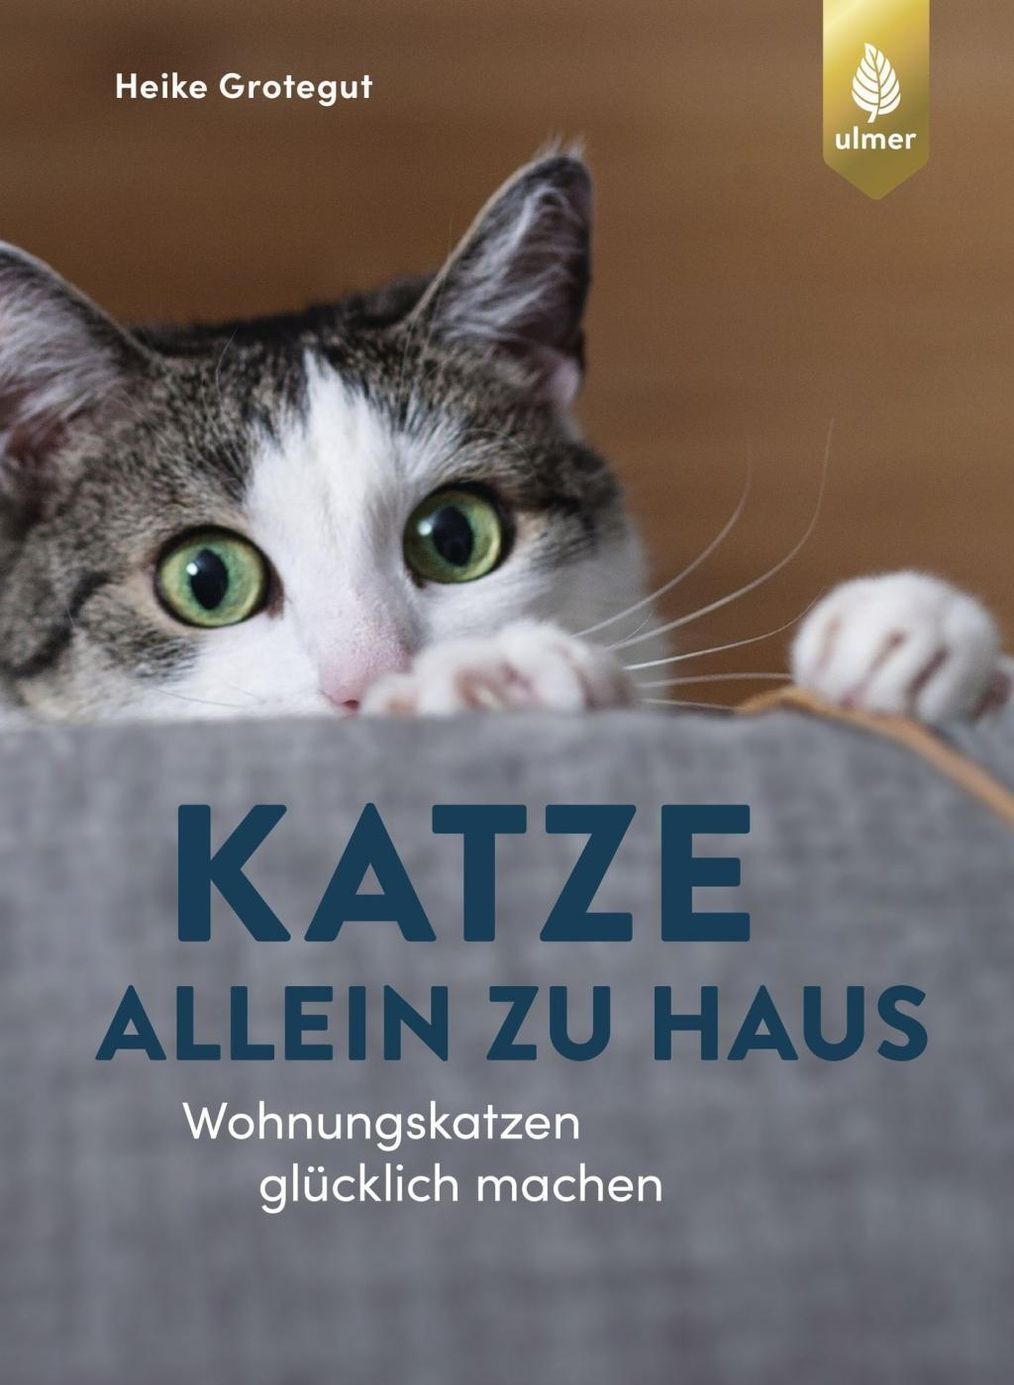 Katze allein zu Haus Buch von Heike Grotegut versandkostenfrei bestellen